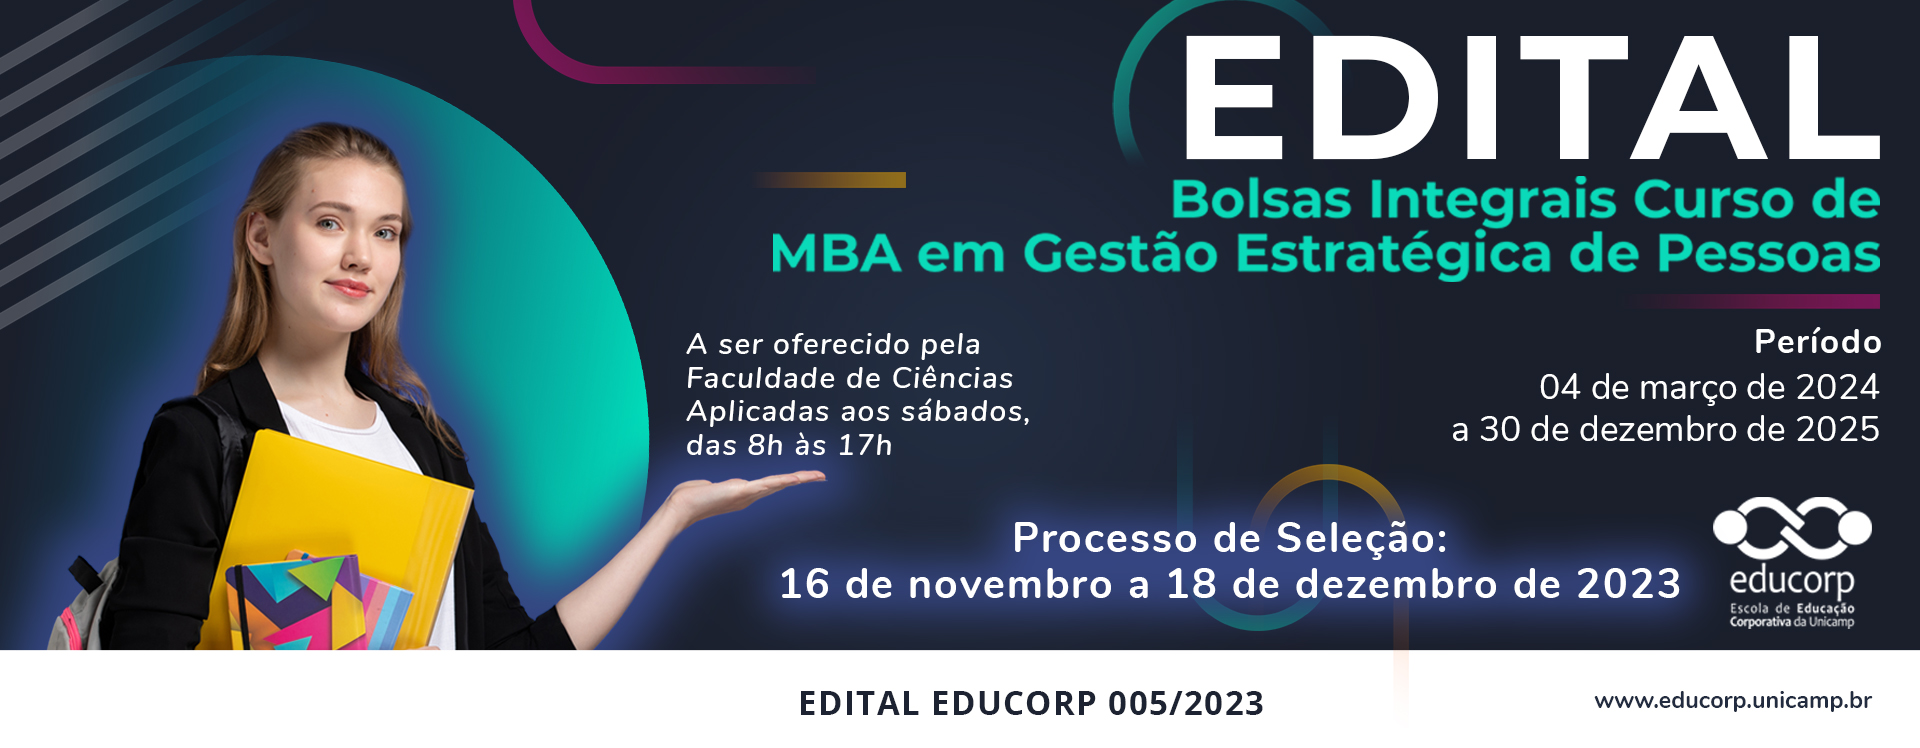 EDITAL EDUCORP 005/2023 - MBA em Gestão Estratégica de Pessoas